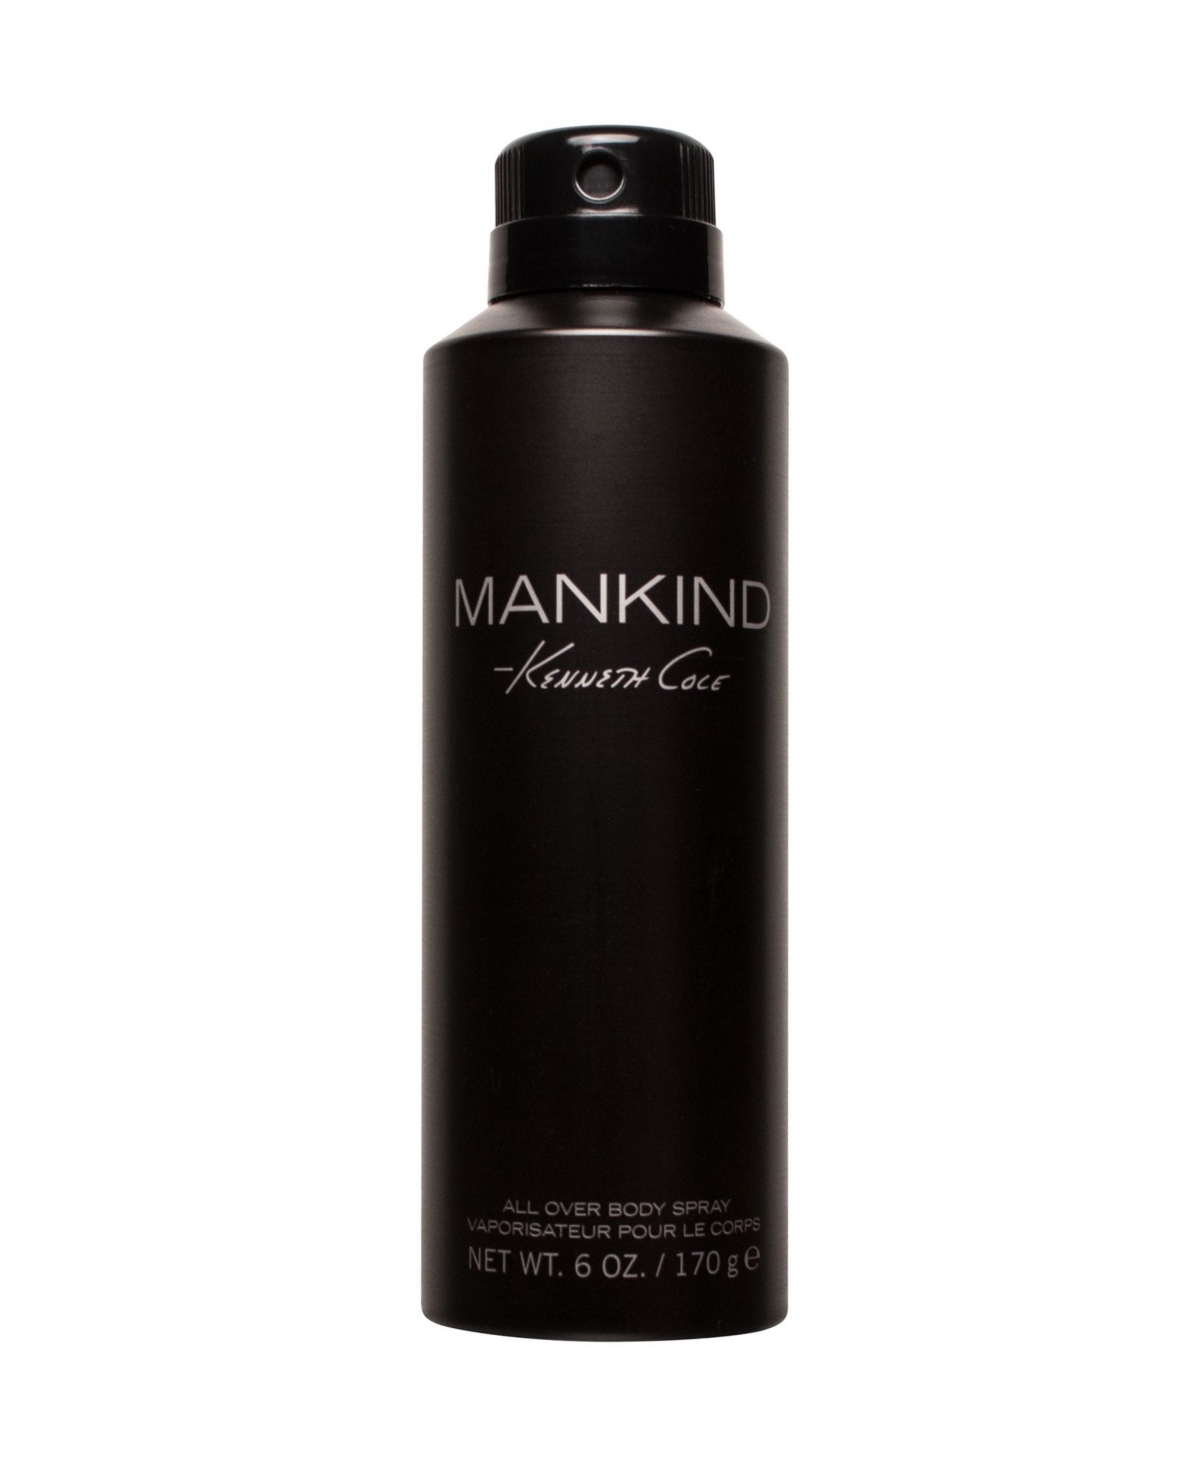 Kenneth Cole Men's Mankind Body Spray, 6oz - Black